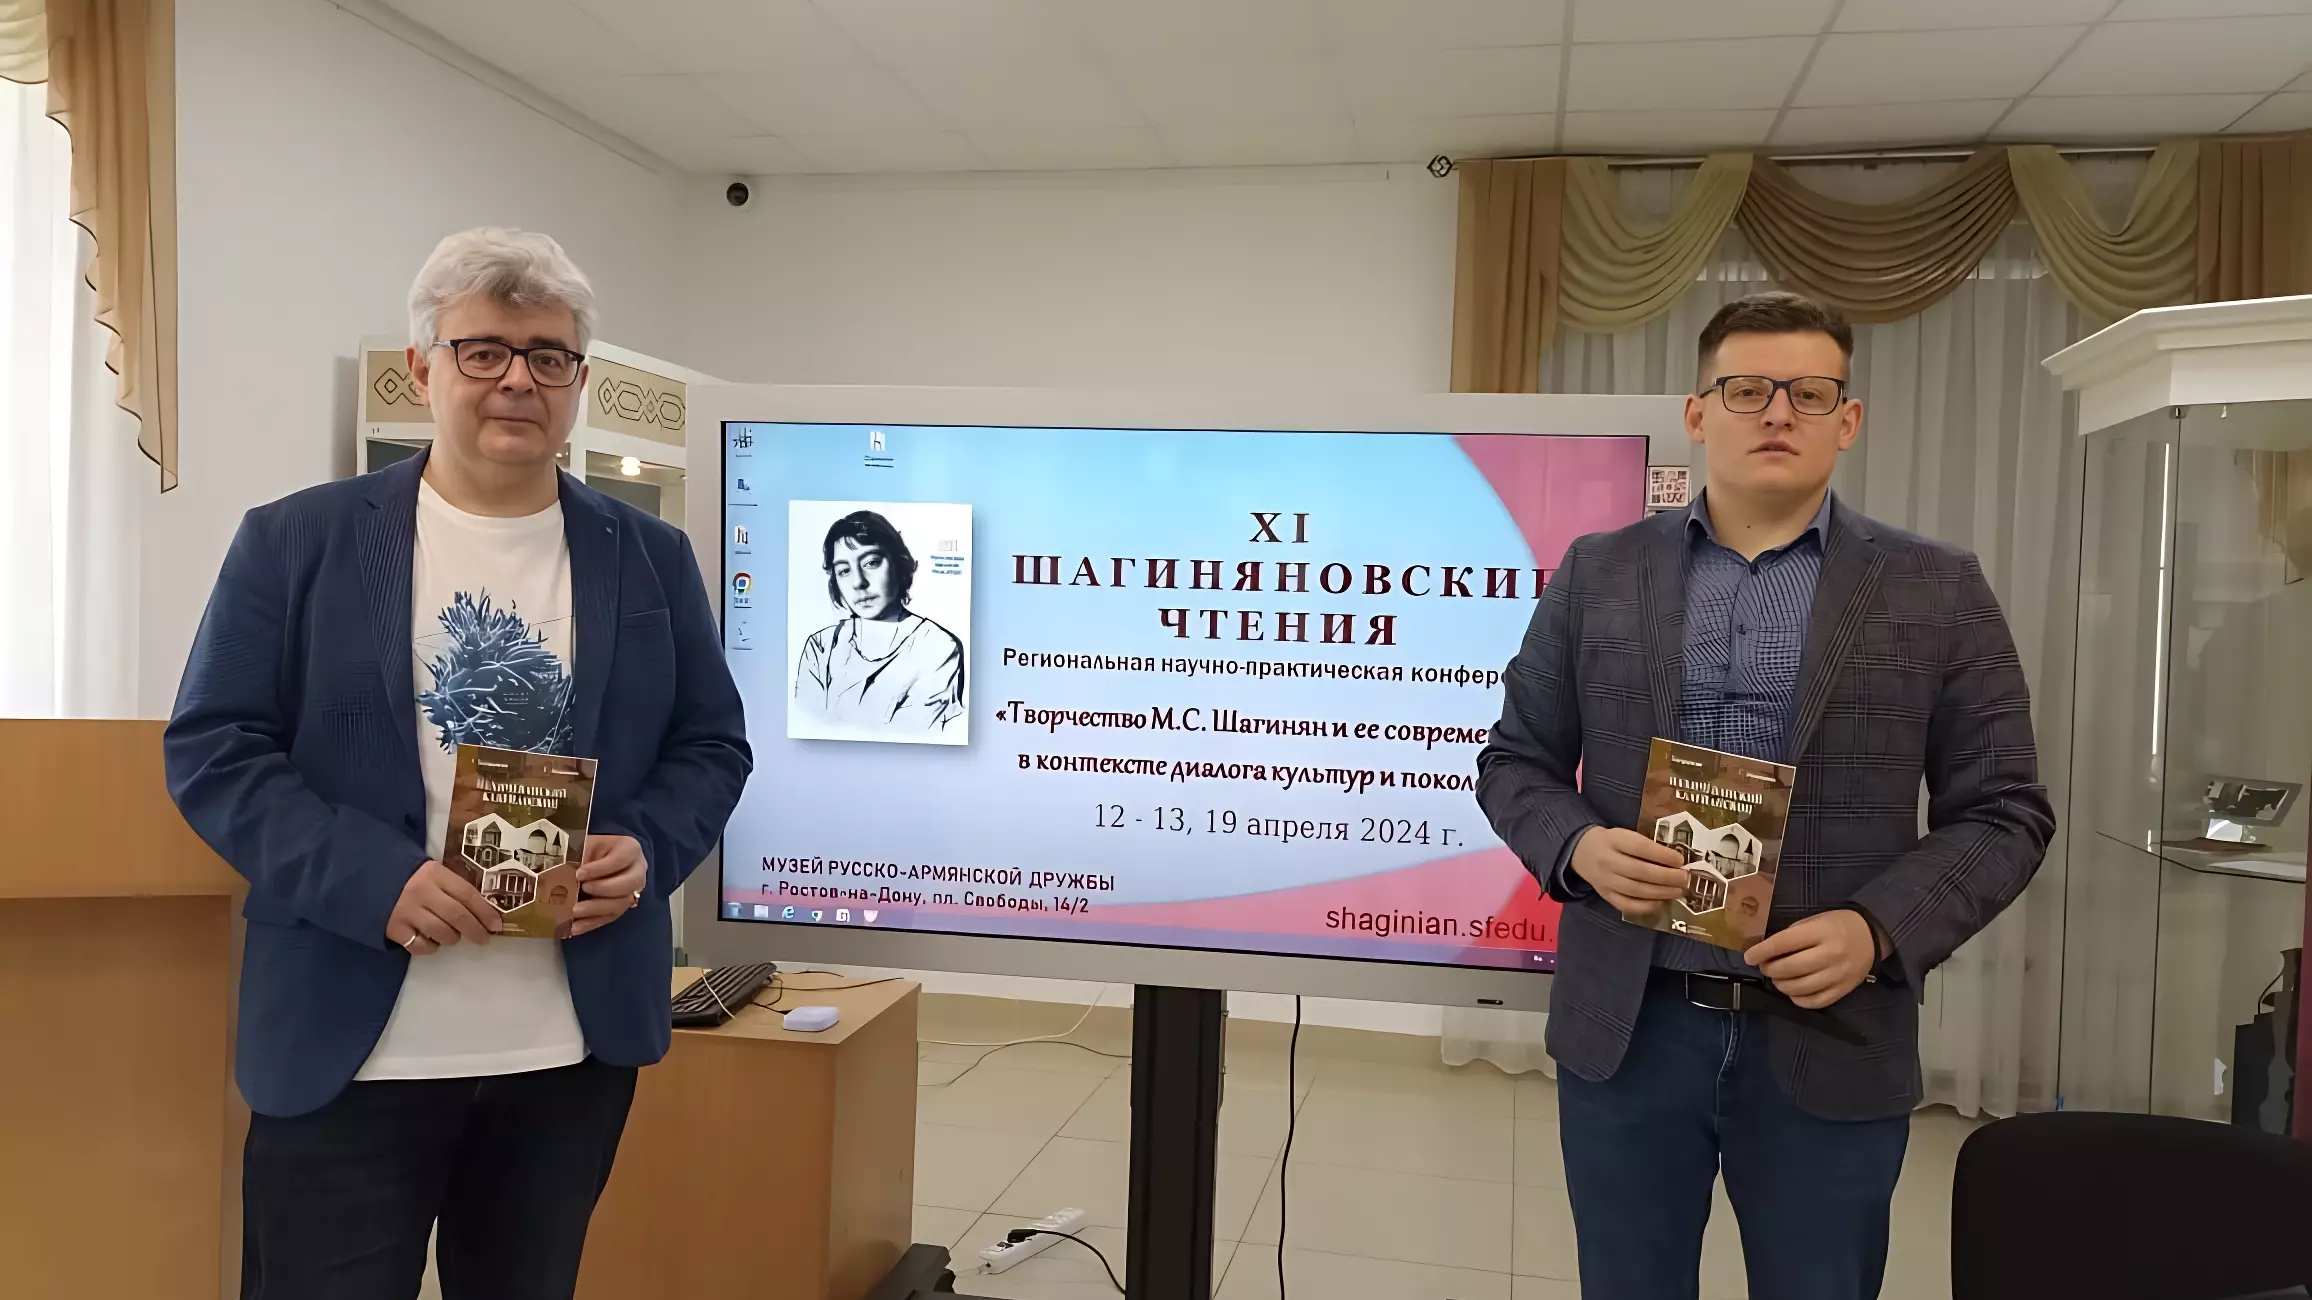 Презентация книги «Нахичеванский калейдоскоп» прошла в музее русско-армянской дружбы